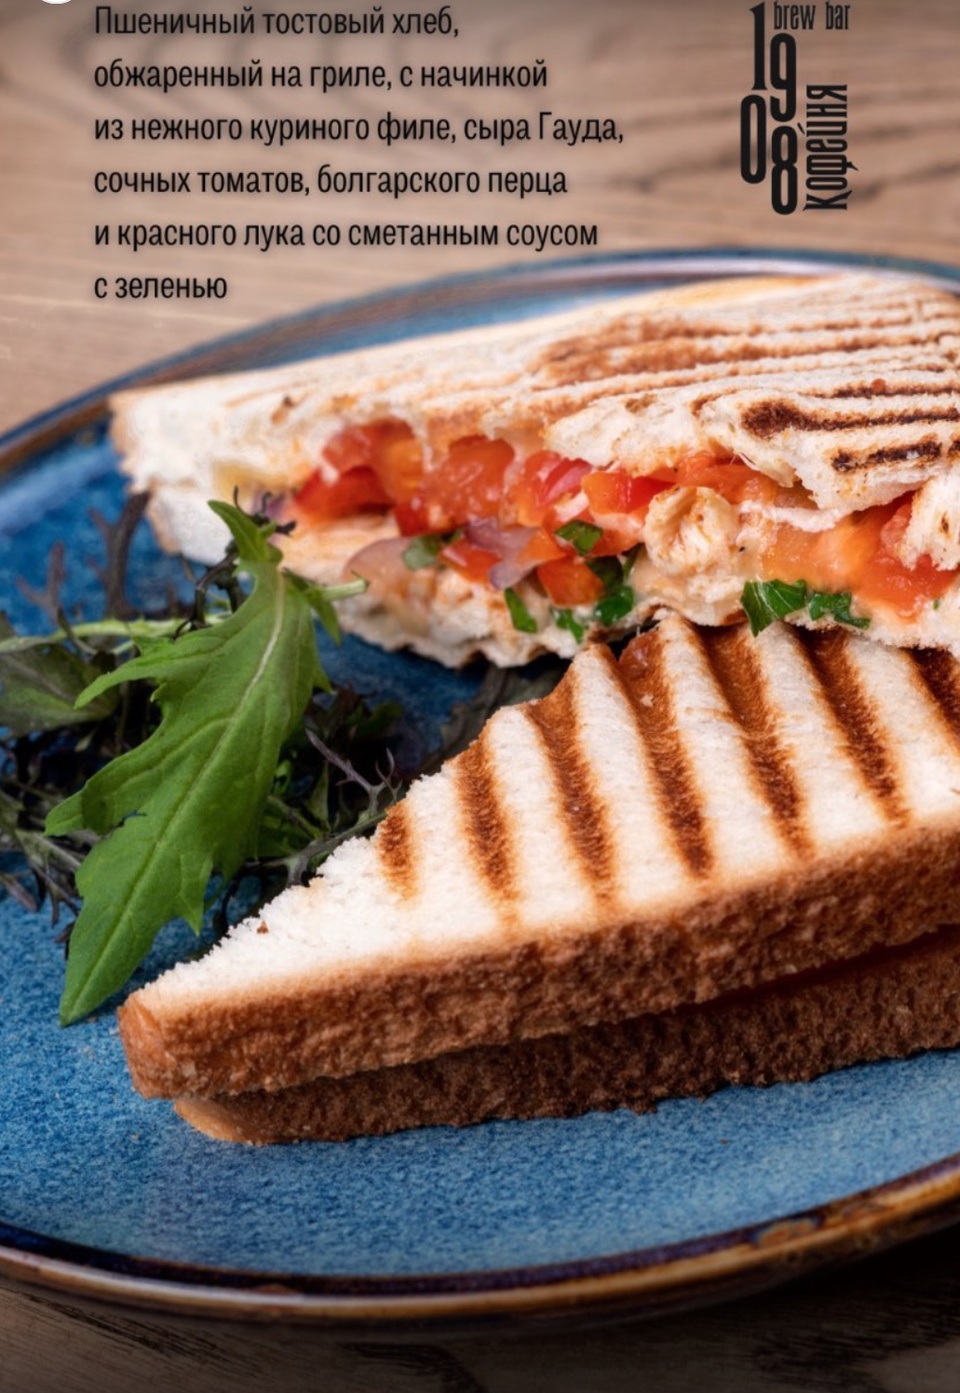 Сэндвич с курицей, сыром и овощами - 285 ₽, заказать онлайн.